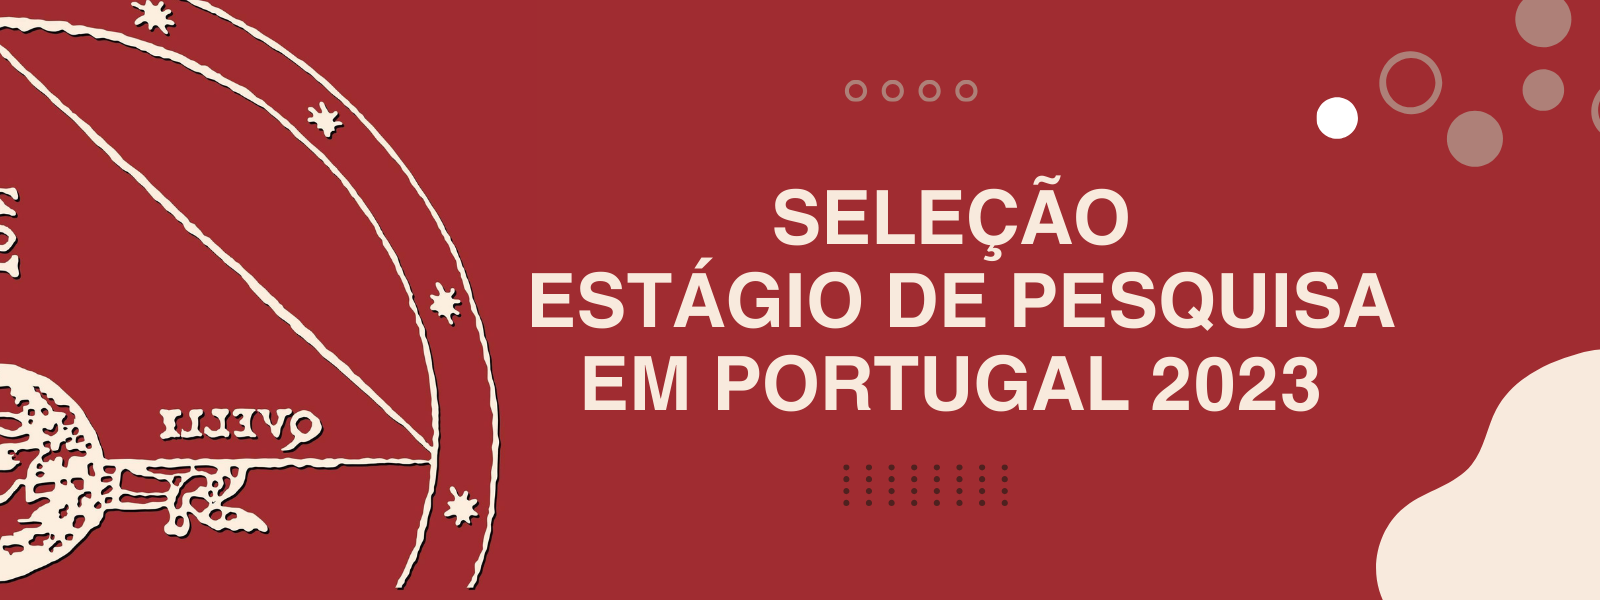 SELEÇÃO DE ESTÁGIO DE PESQUISA EM PORTUGAL 2022 (1).png